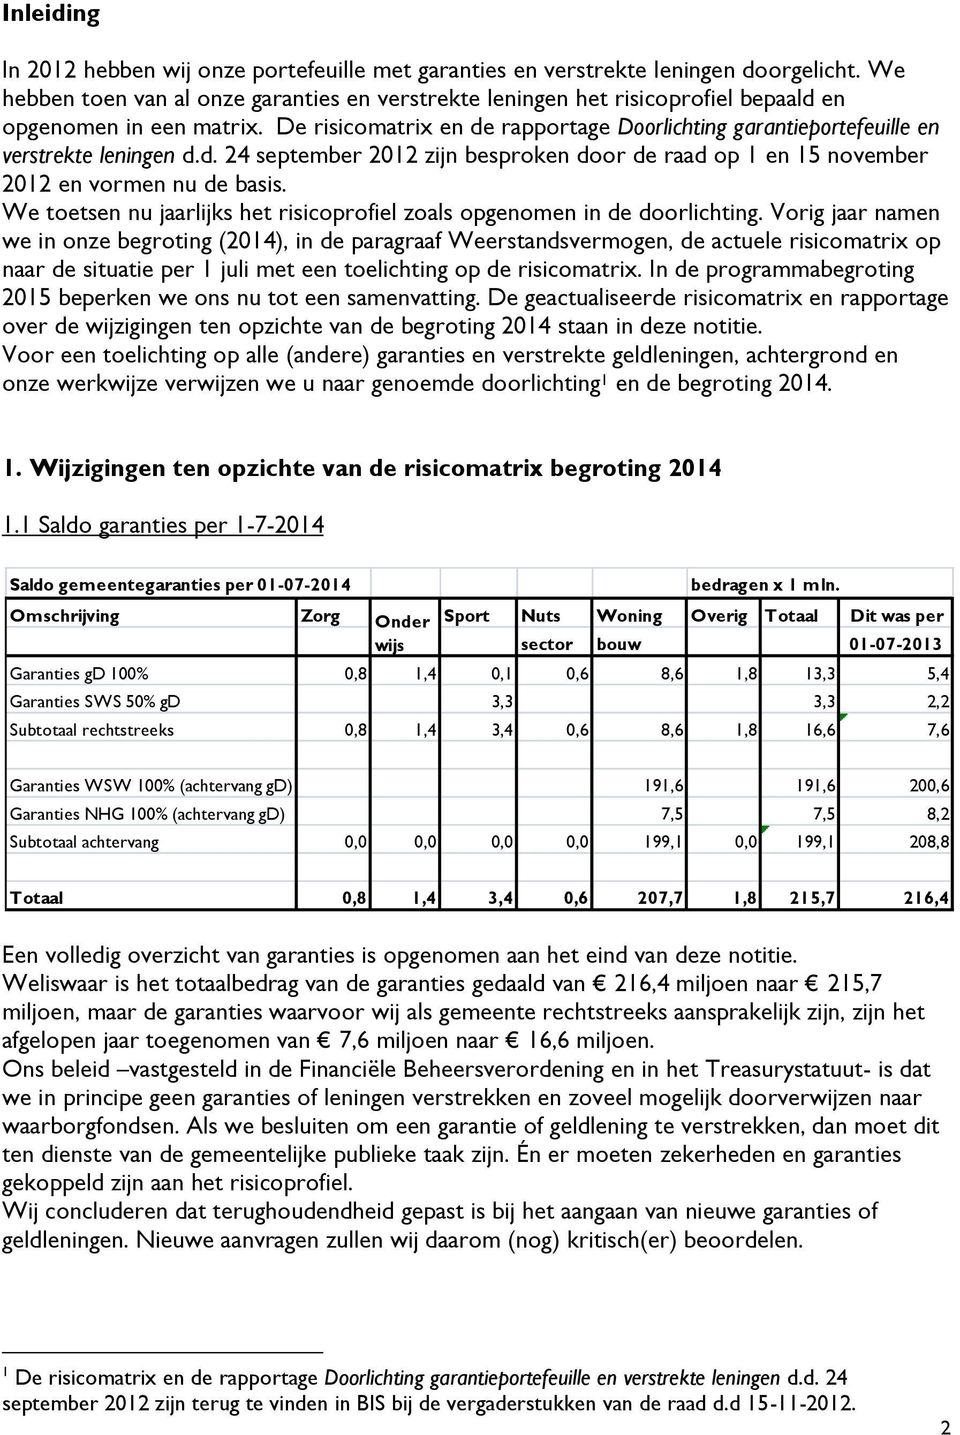 De risicomatrix en de rapportage Doorlichting garantieportefeuille en verstrekte leningen d.d. 24 september 2012 zijn besproken door de raad op 1 en 15 november 2012 en vormen nu de basis.